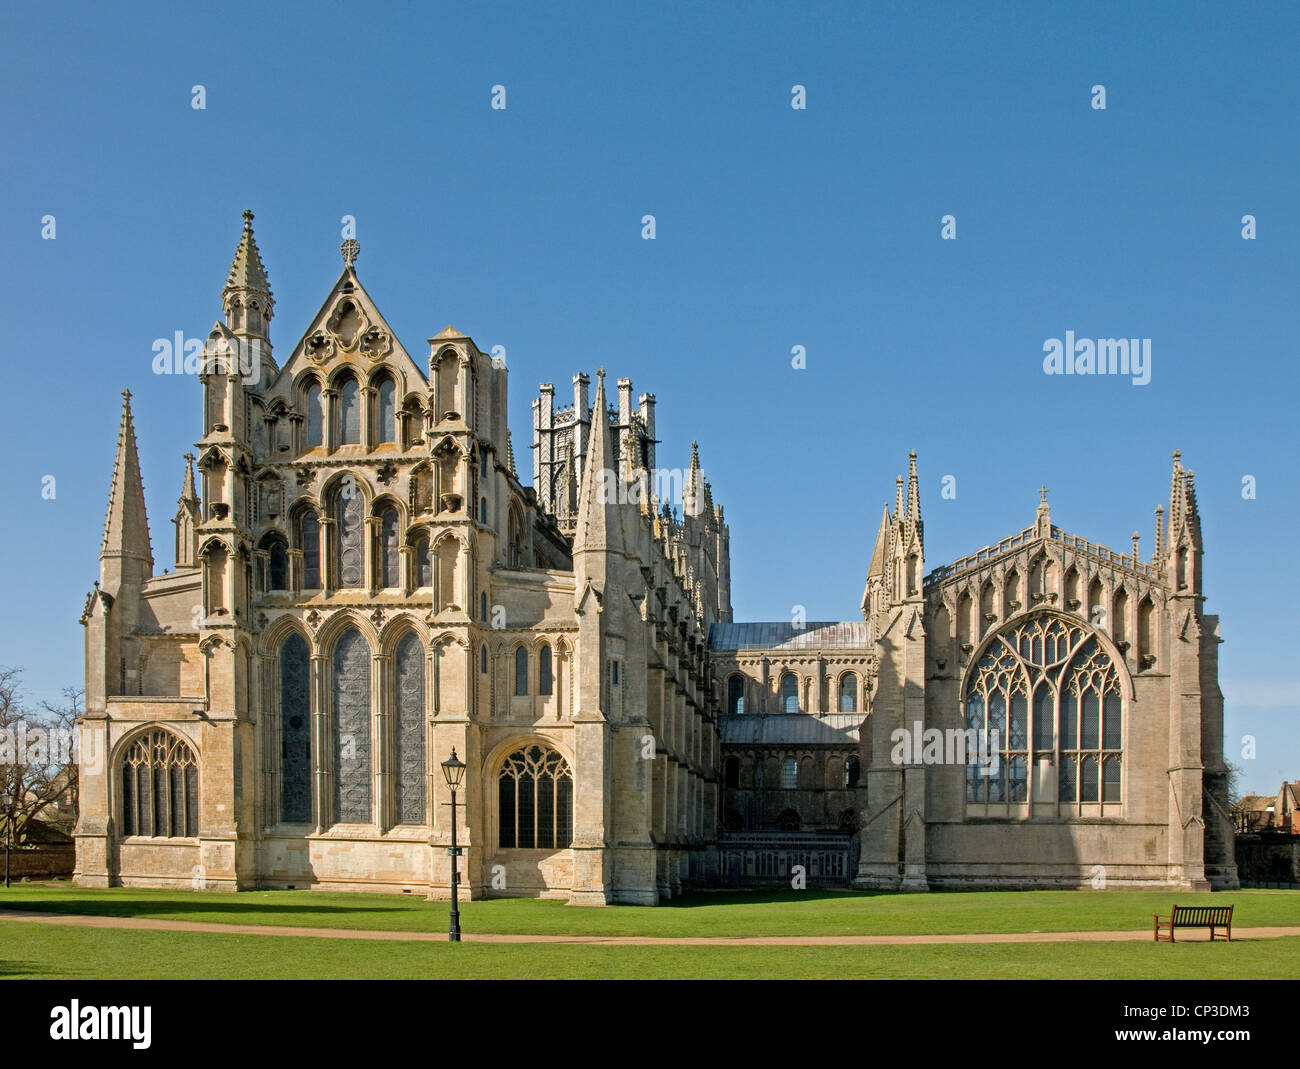 East end de cathédrale d'Ely avec chapelle de la vierge à droite vu de Almony jardins au printemps soleil avec ciel bleu Banque D'Images